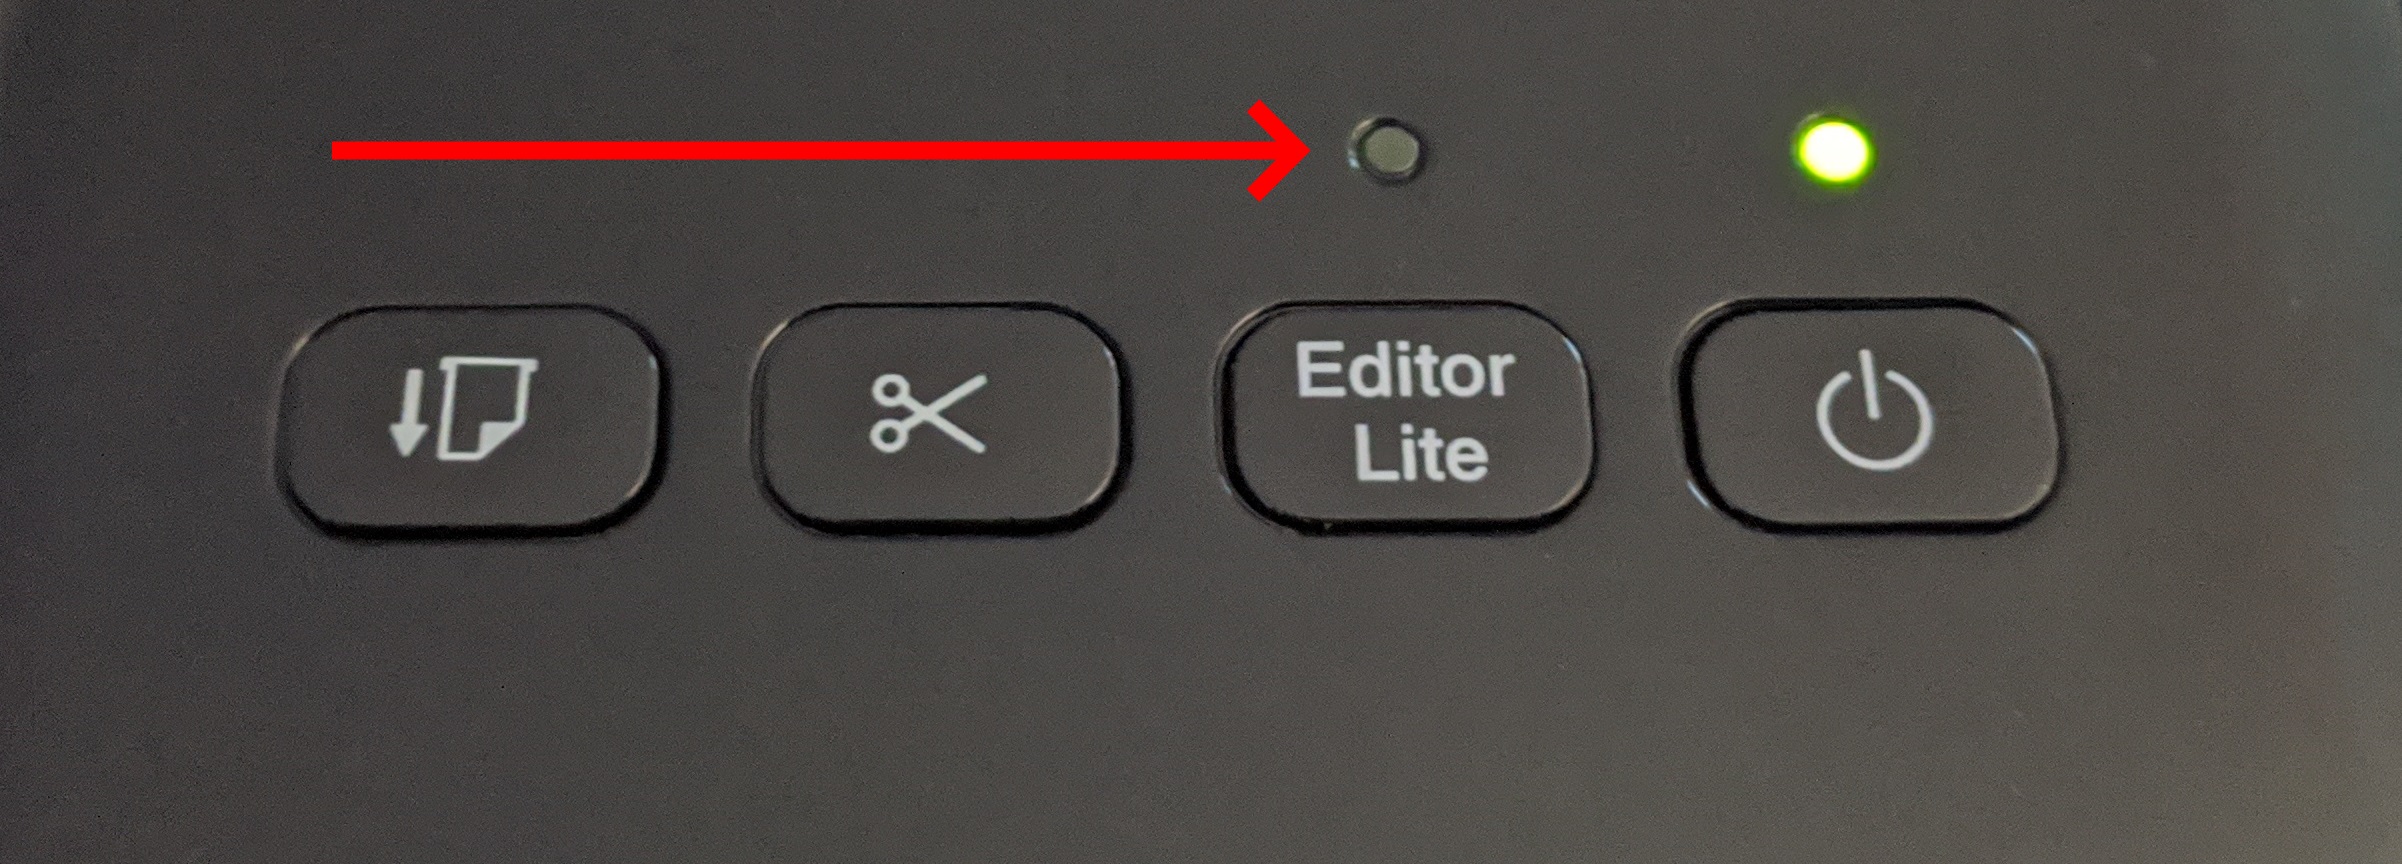 The Editor Lite button